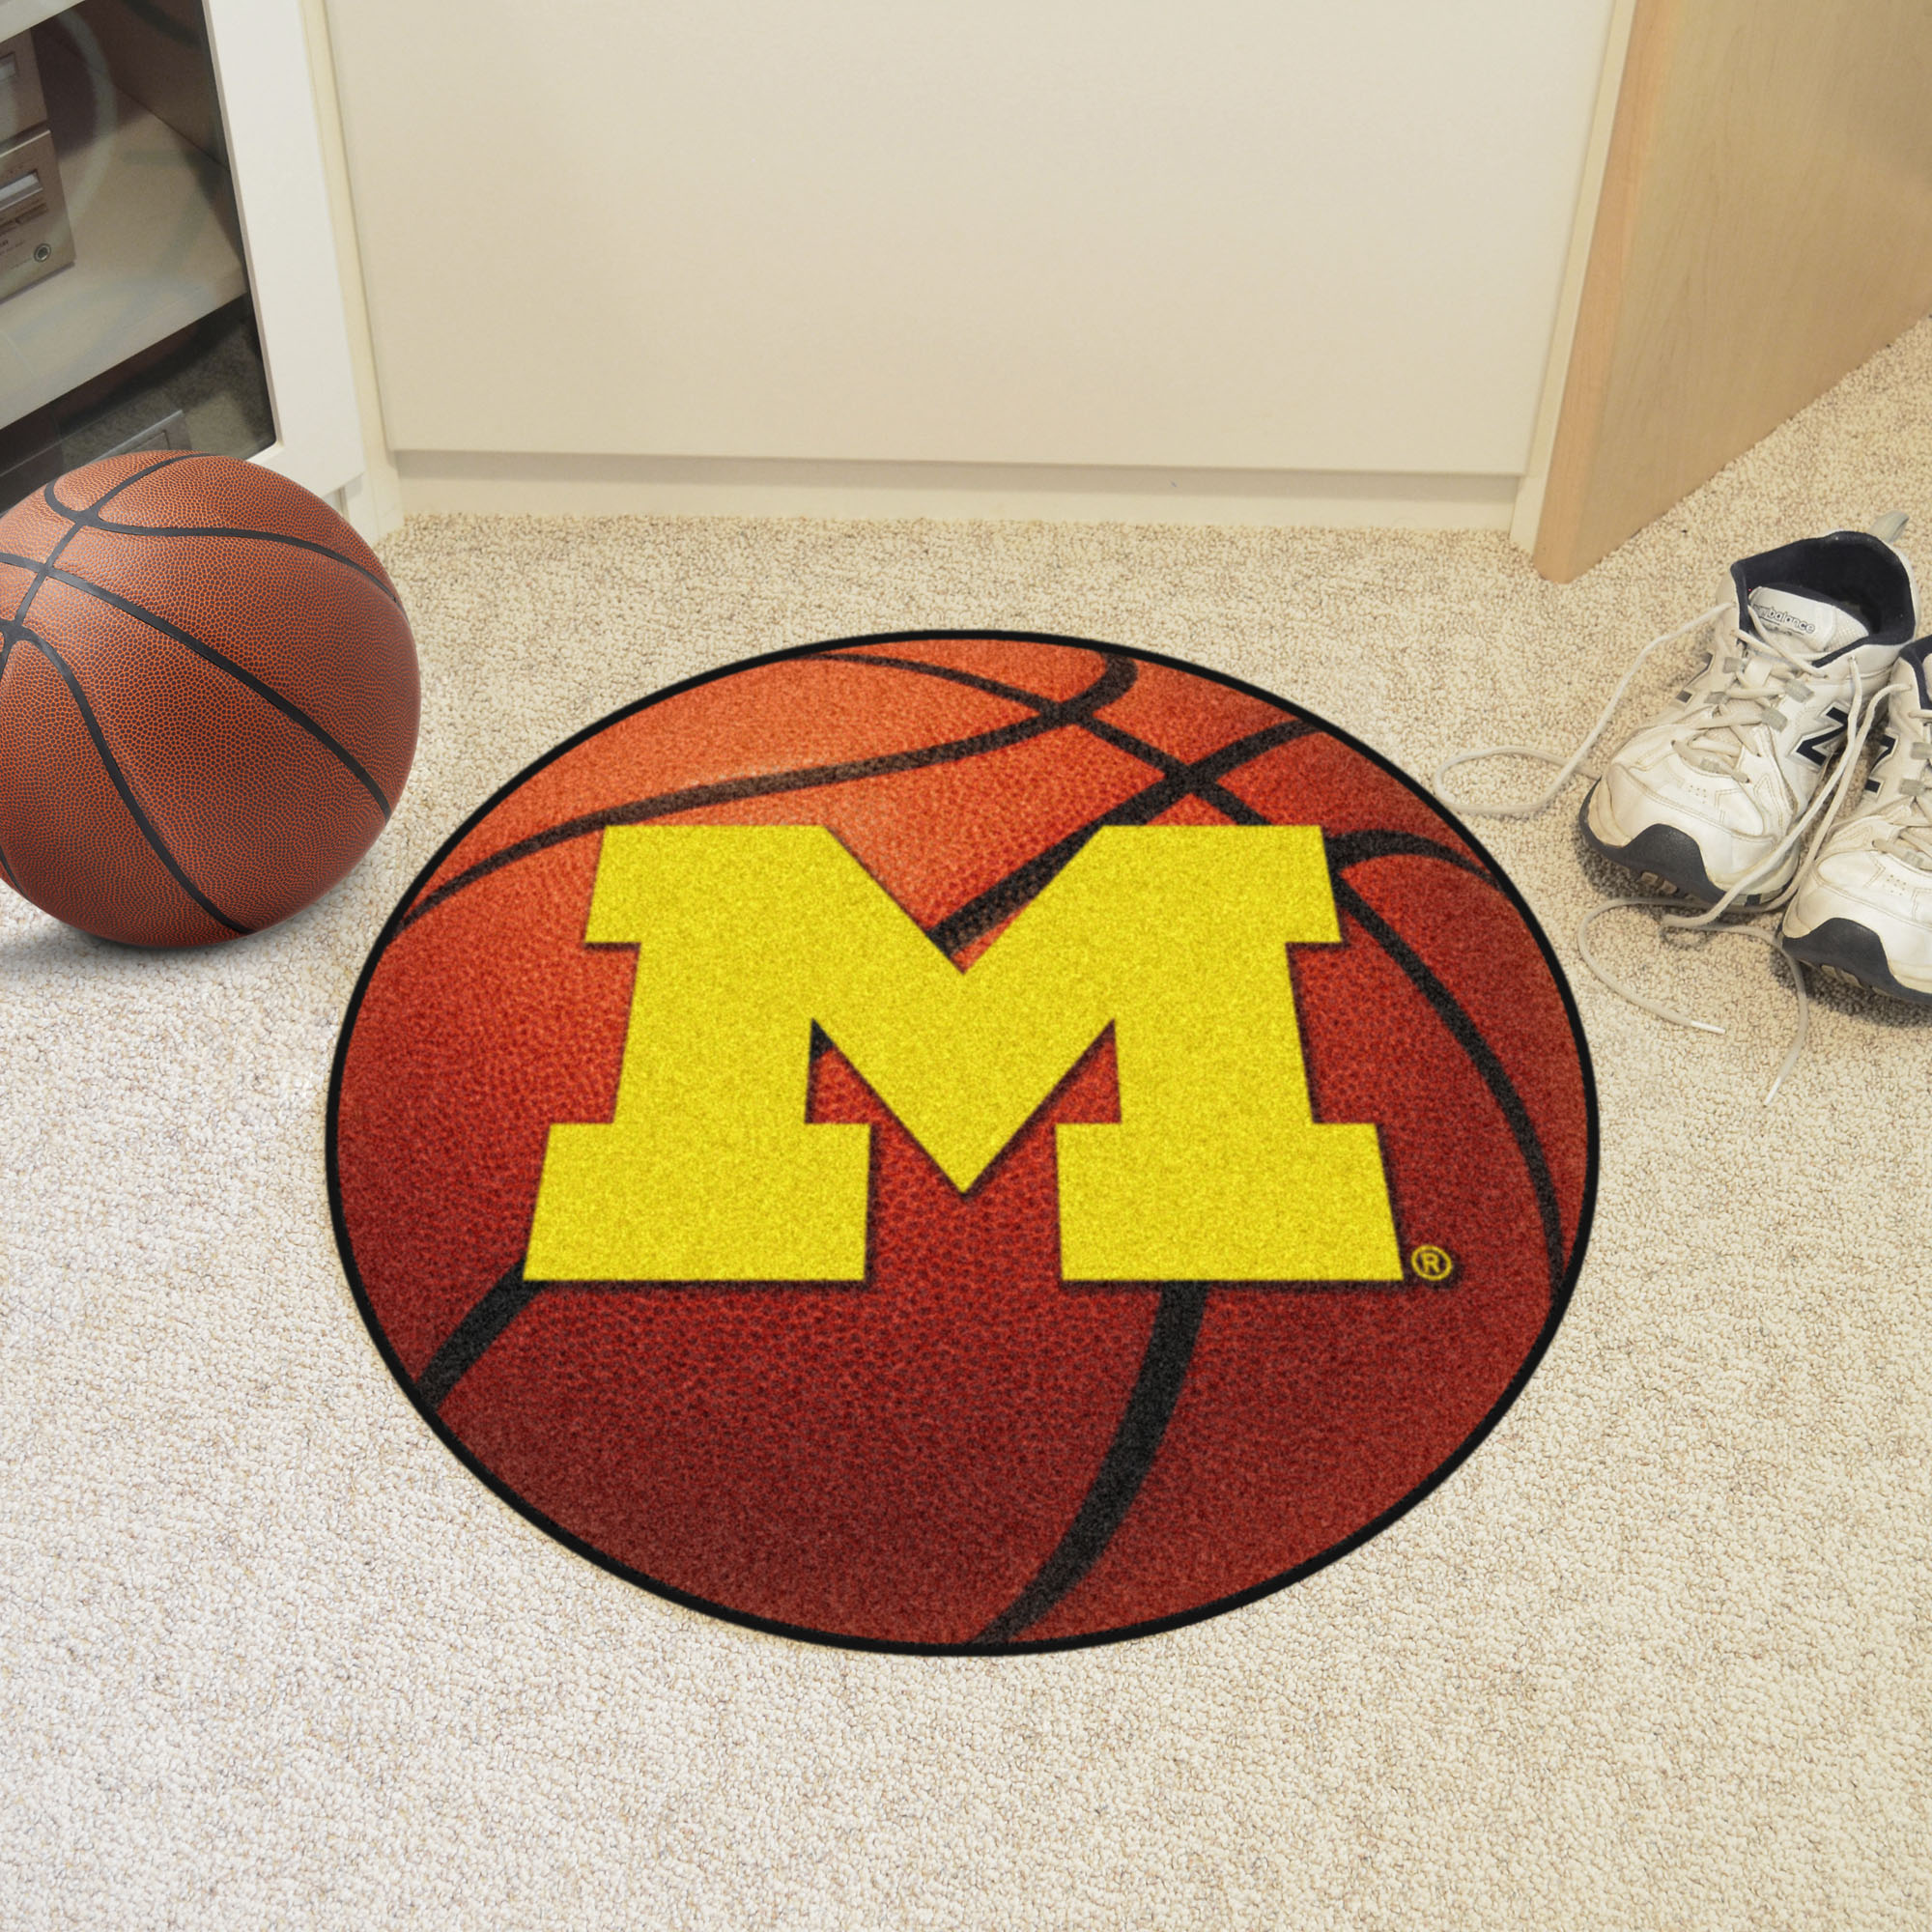 University of Michigan Ball Shaped Area Rugs (Ball Shaped Area Rugs: Basketball)